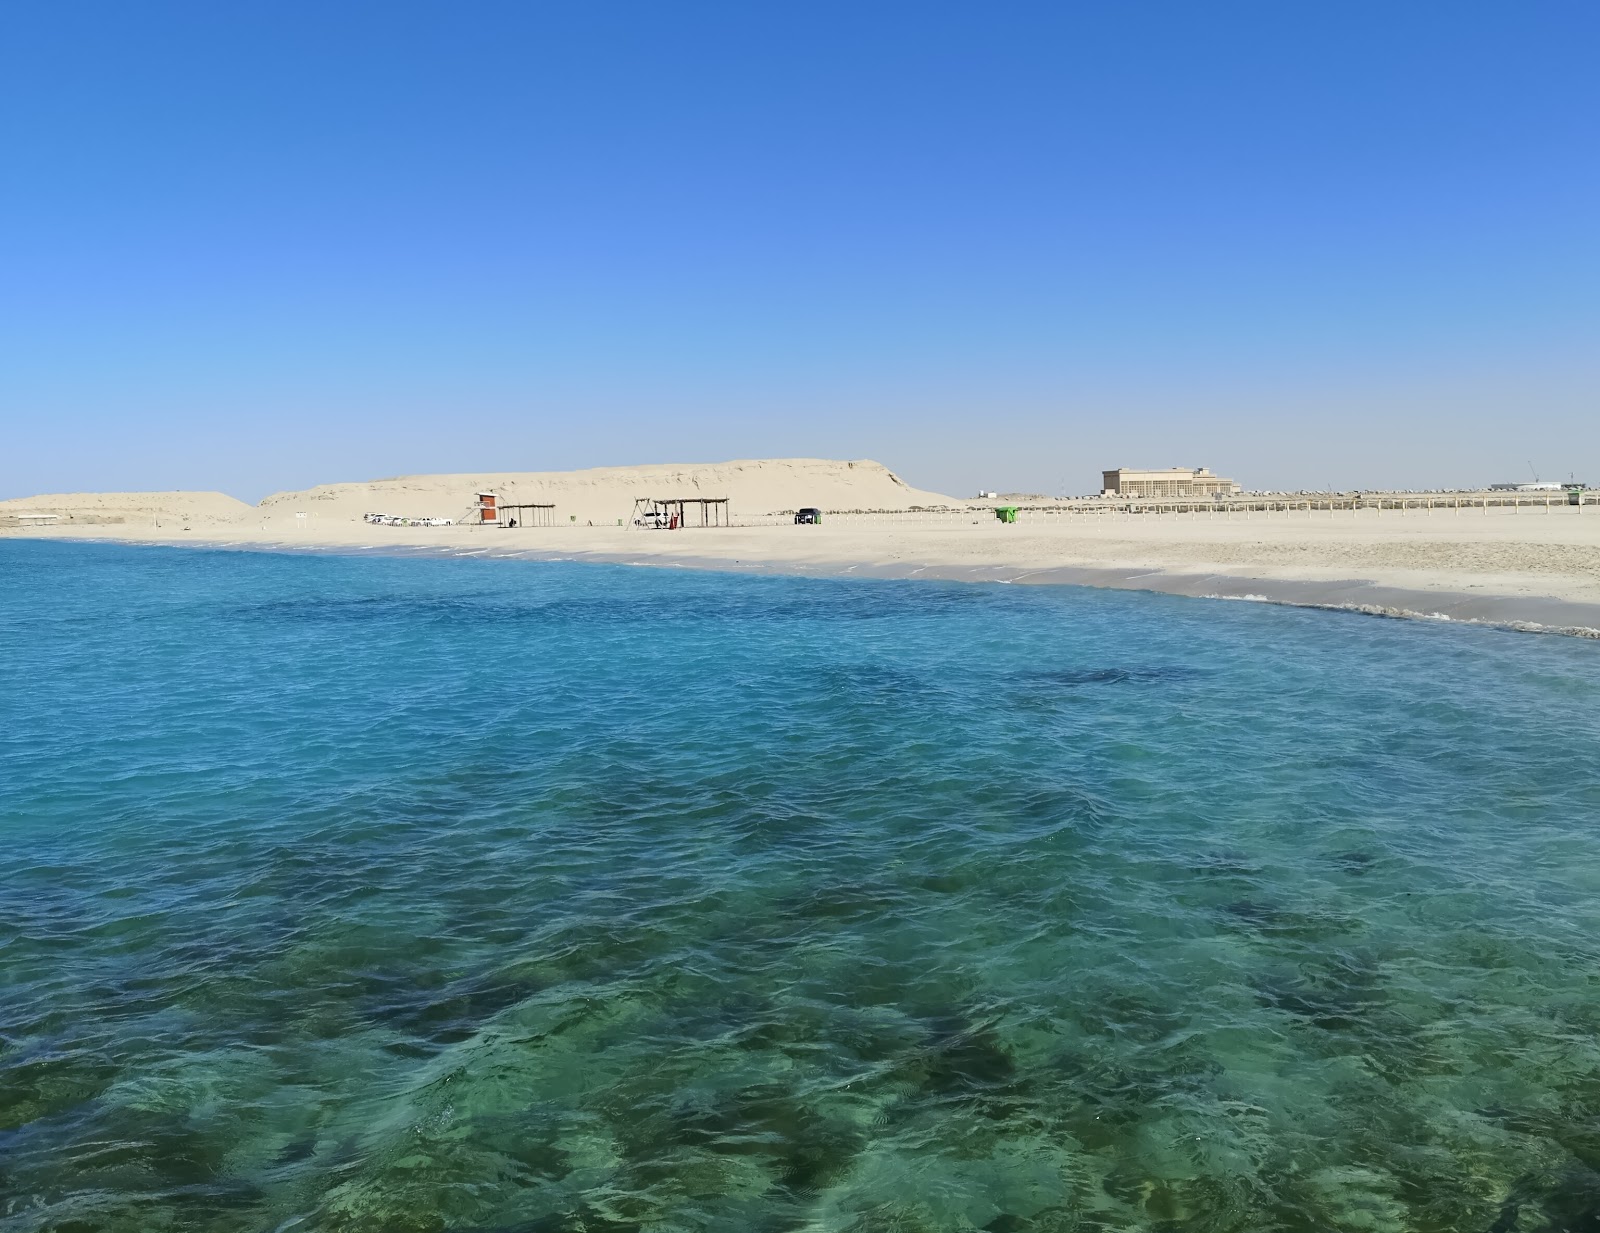 Zdjęcie Al Hamriya beach II z przestronna zatoka